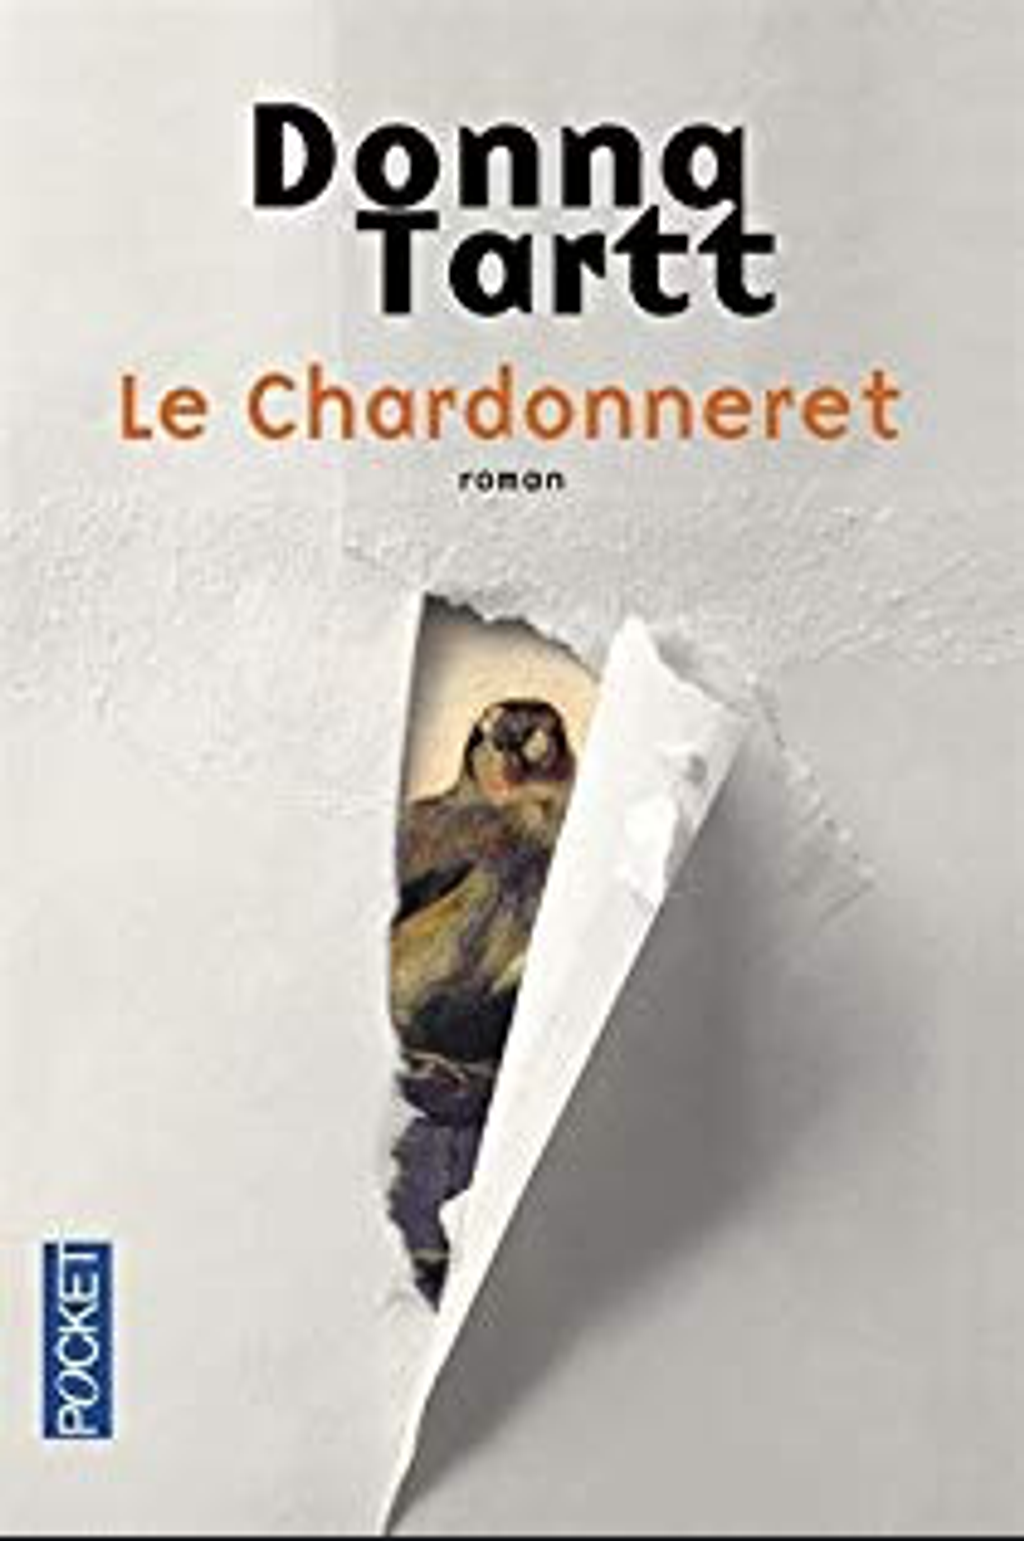 Le chardonneret - Donna Tartt - LE - 17.png